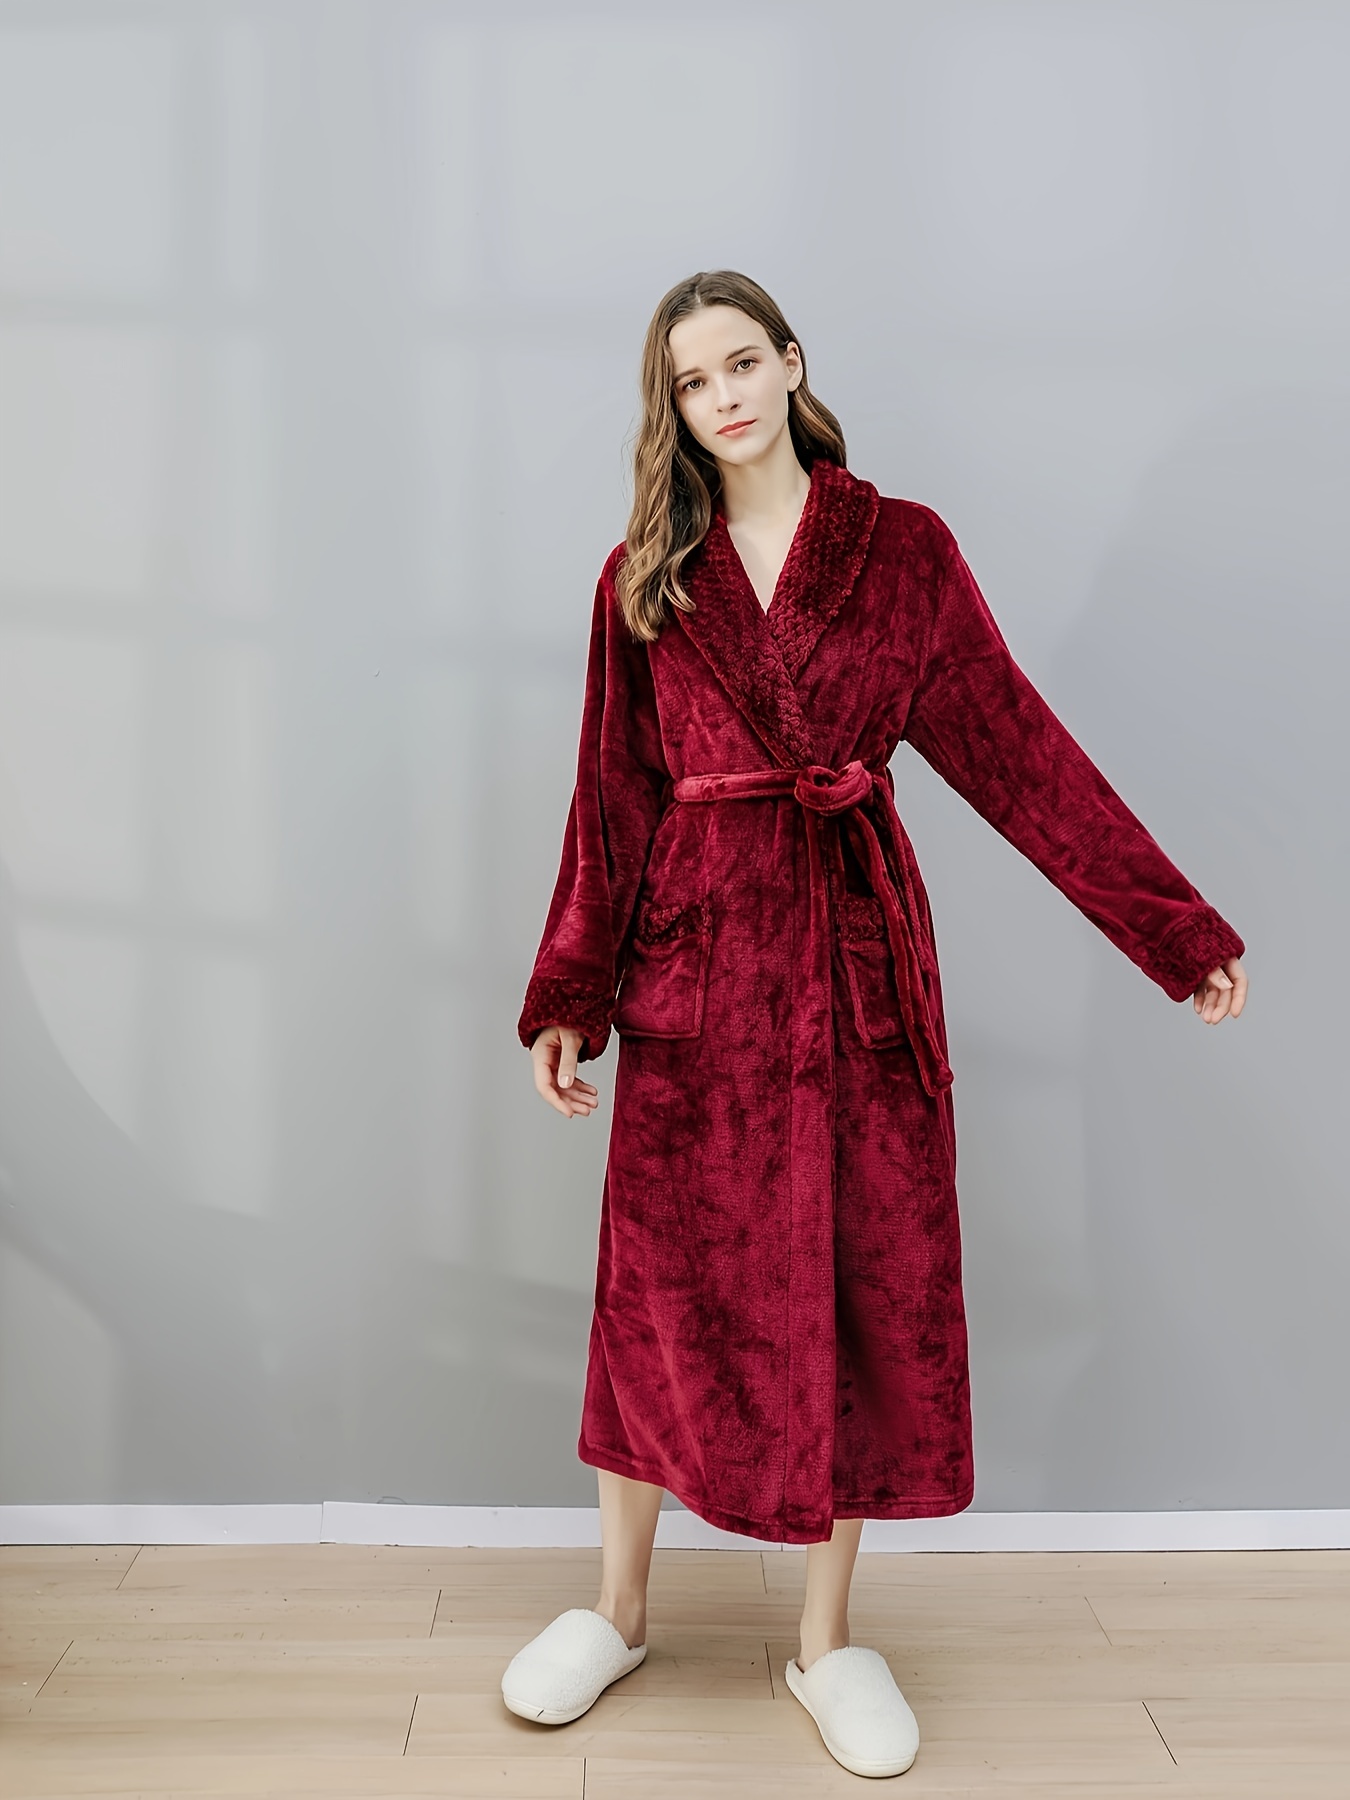 Robes for Women Fuzzy Long Sleeve Sleepwear Dress for Women